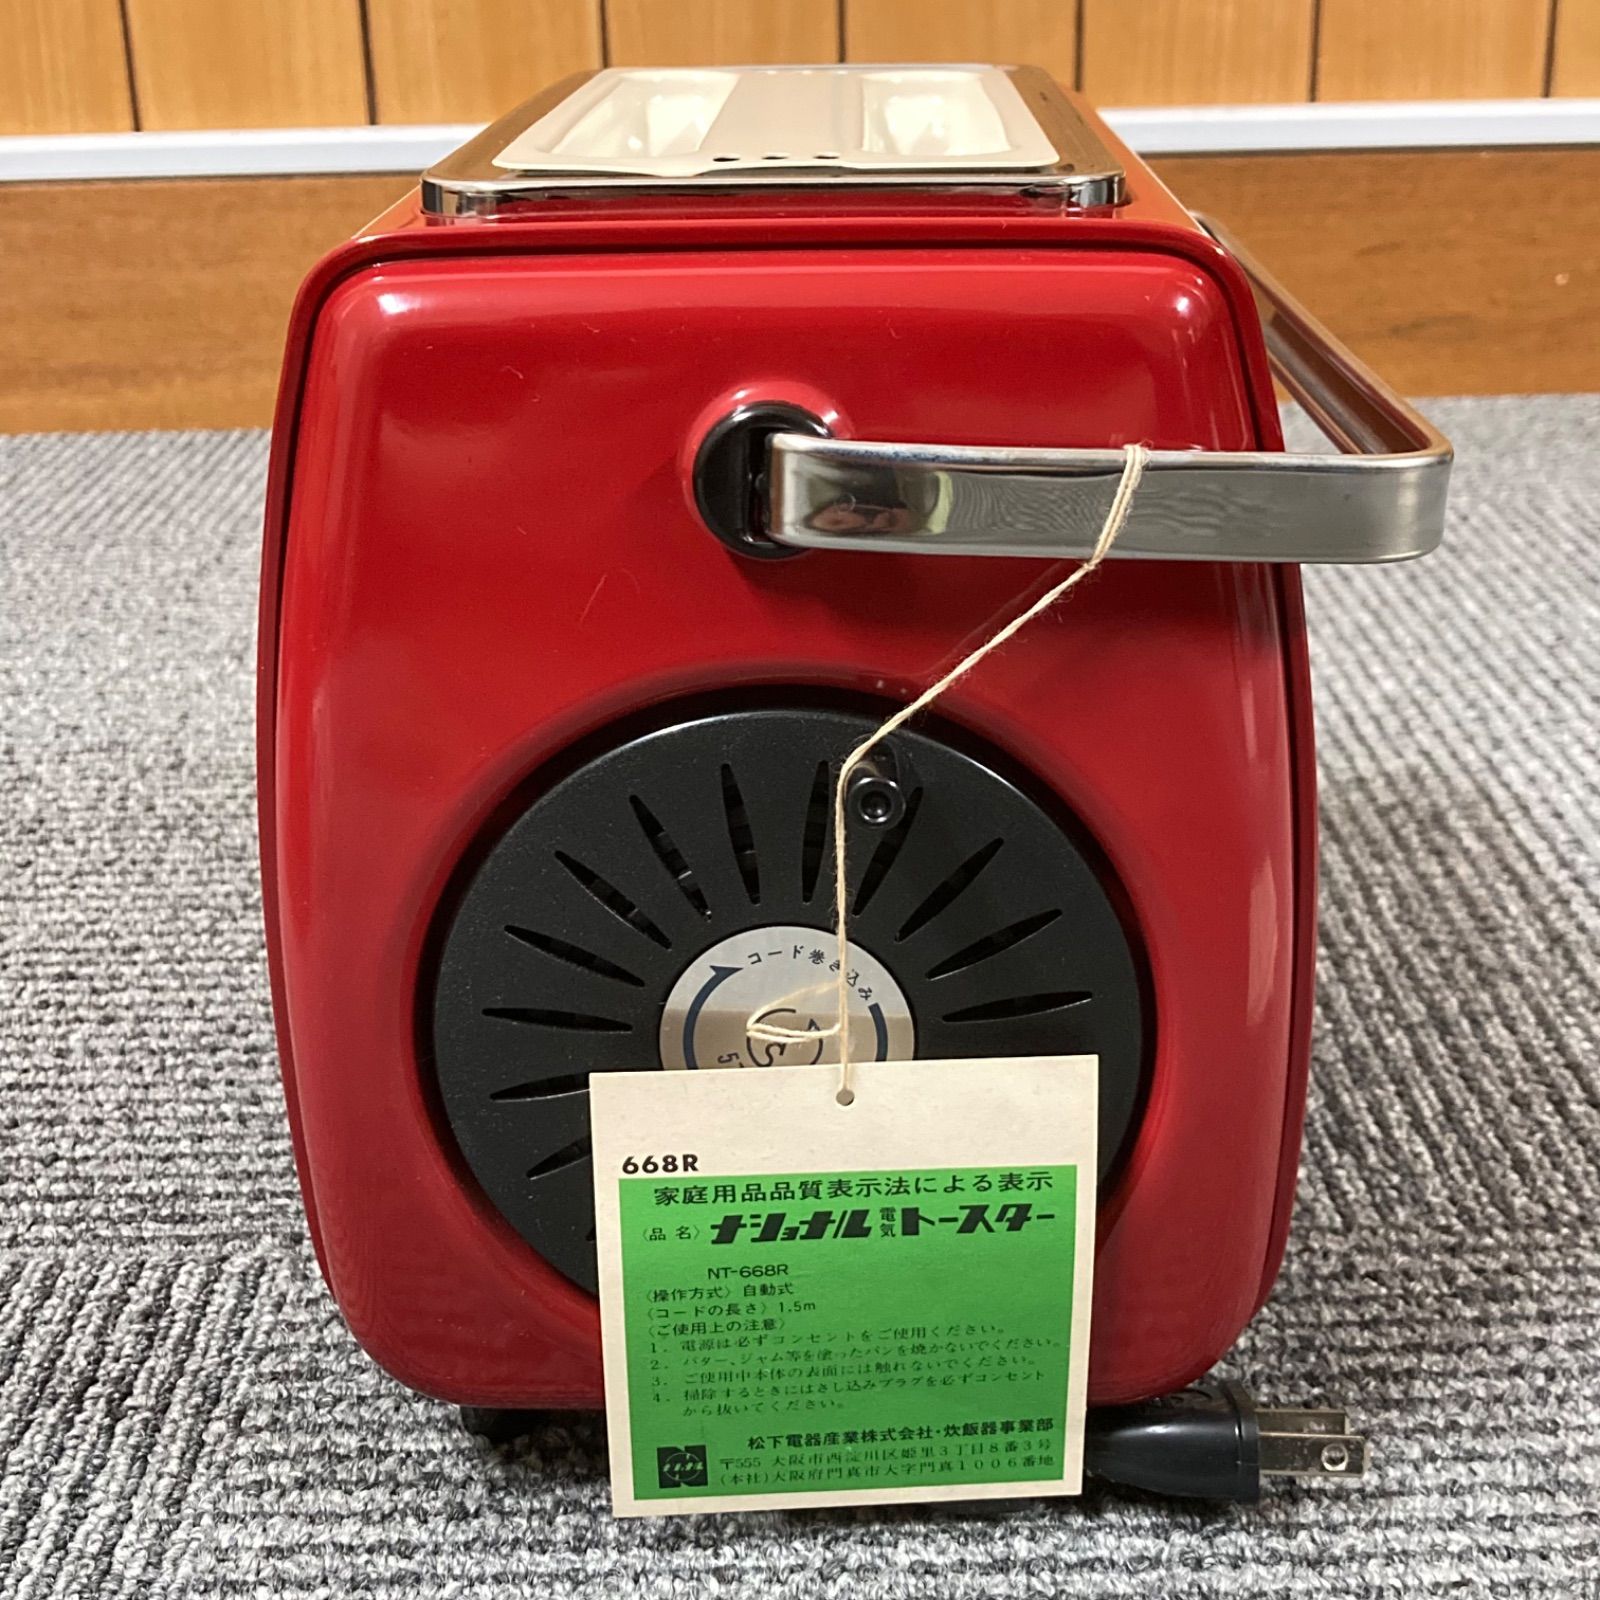 未使用】National(ナショナル) 自動トースター NT-668R 赤 レッド 松下